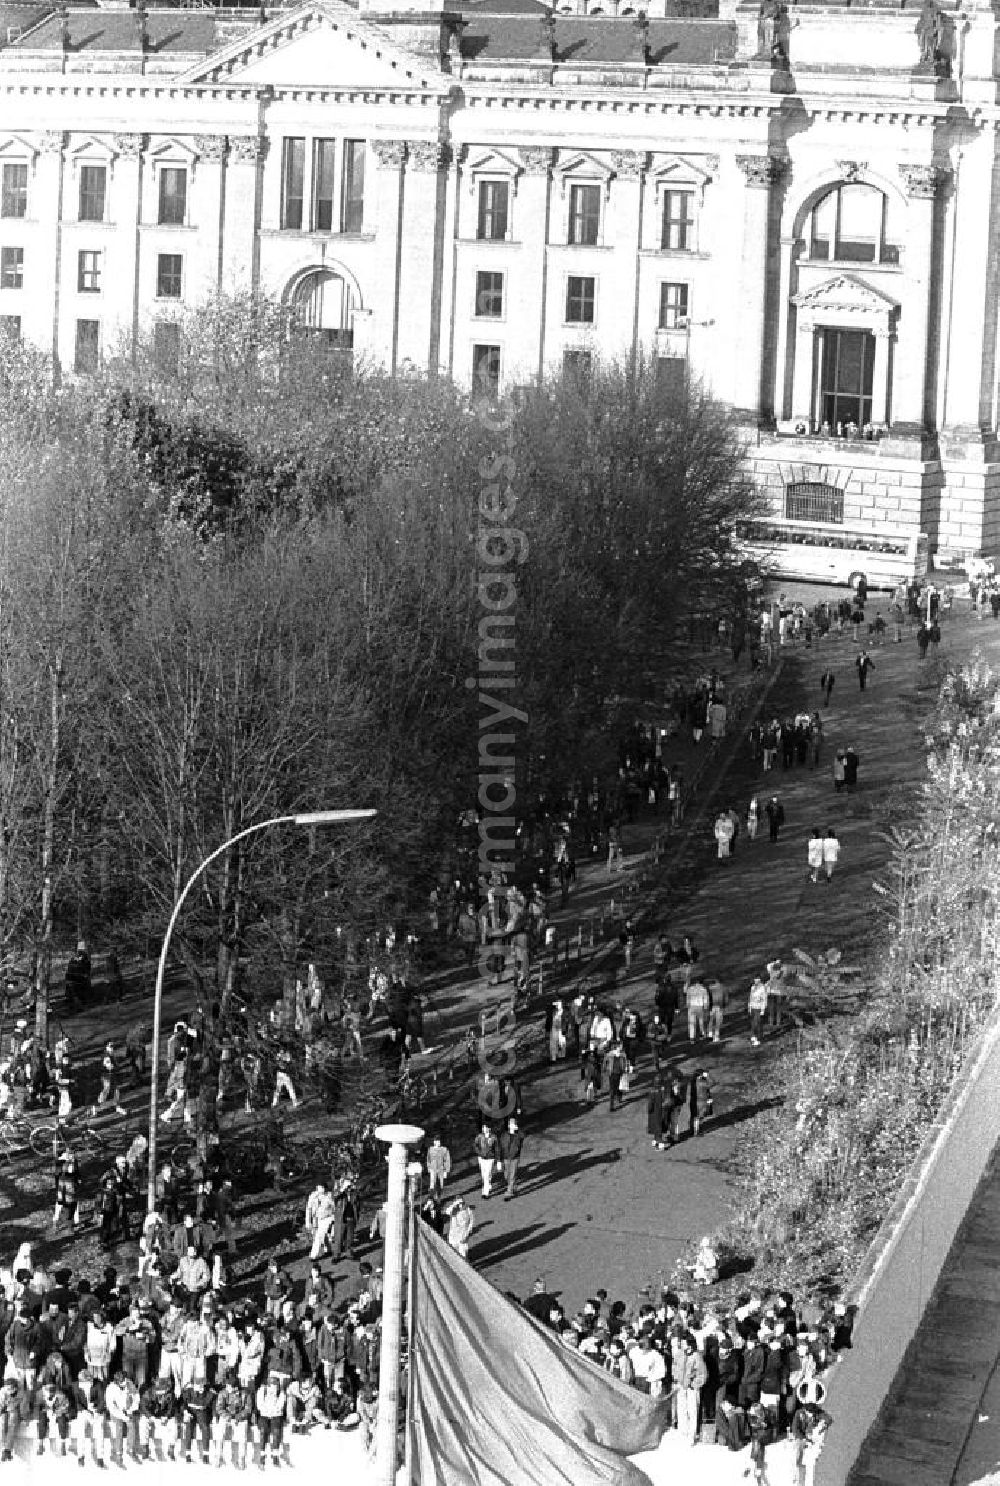 GDR image archive: Berlin - Blick vom Brandenburger Tor auf Menschen welche auf der Mauer sitzen bzw. stehen. Im Hintergrund der Reichstag.